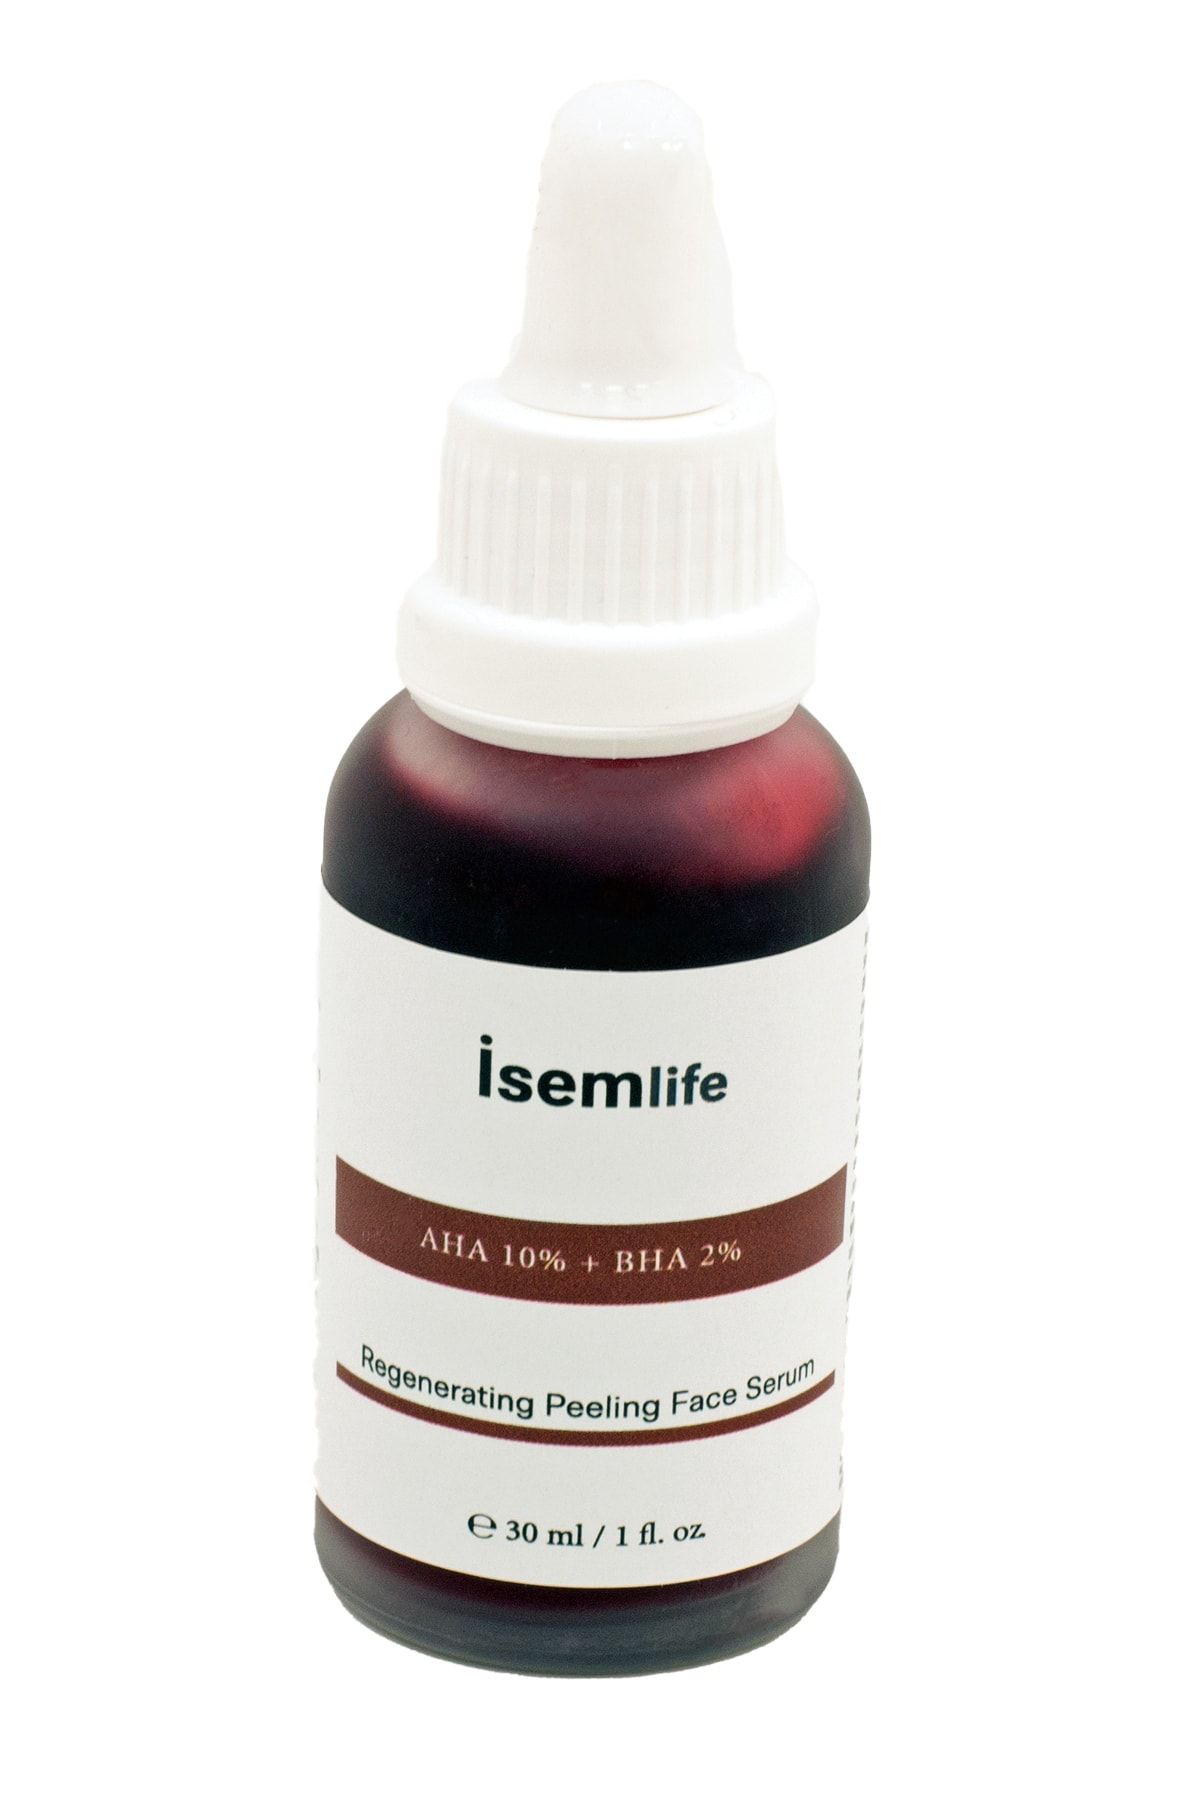 İsemlife Canlandırıcı & Cilt Tonu Eşitleyici Peeling Serum 30 ml ( Aha 10% Bha 2% )